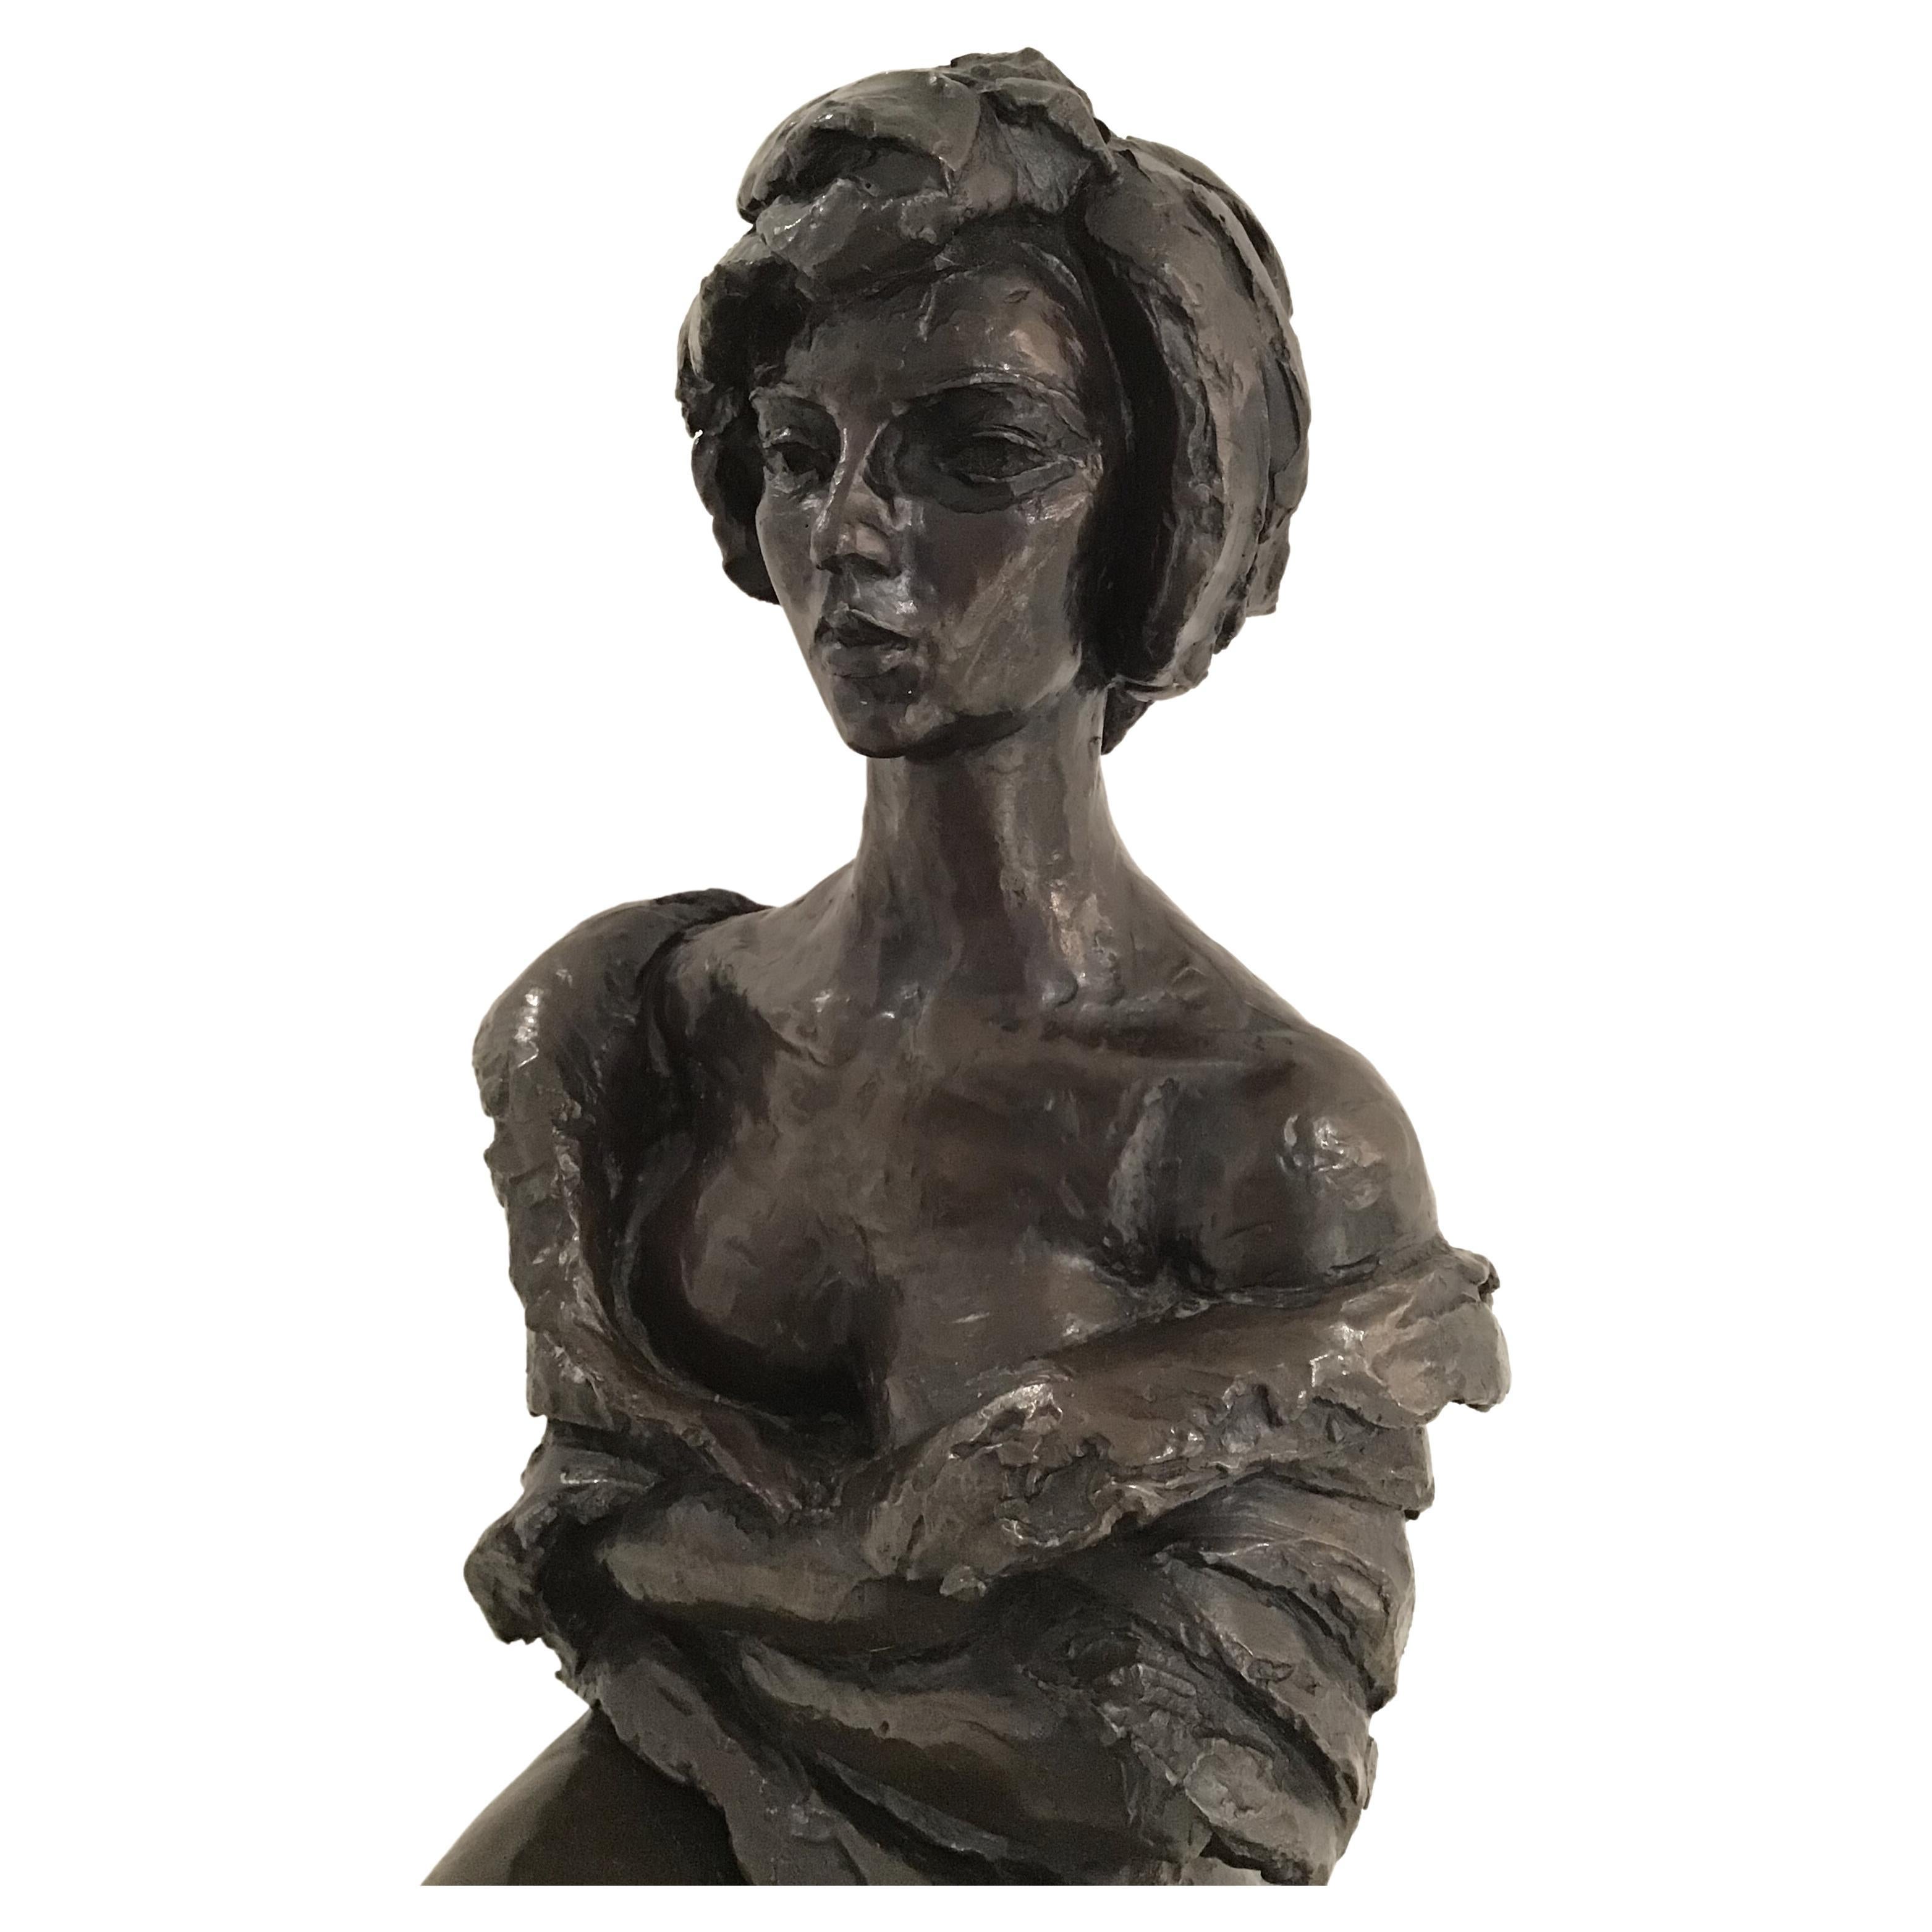 Magnifique sculpture en bronze patiné sur socle en marbre noir du sculpteur américain Charles Umlauf, signée, vers 1970.
Portrait sculpté d'une femme assise. 
Umlauf était l'un des principaux sculpteurs du Texas dans la seconde moitié du 20e siècle.